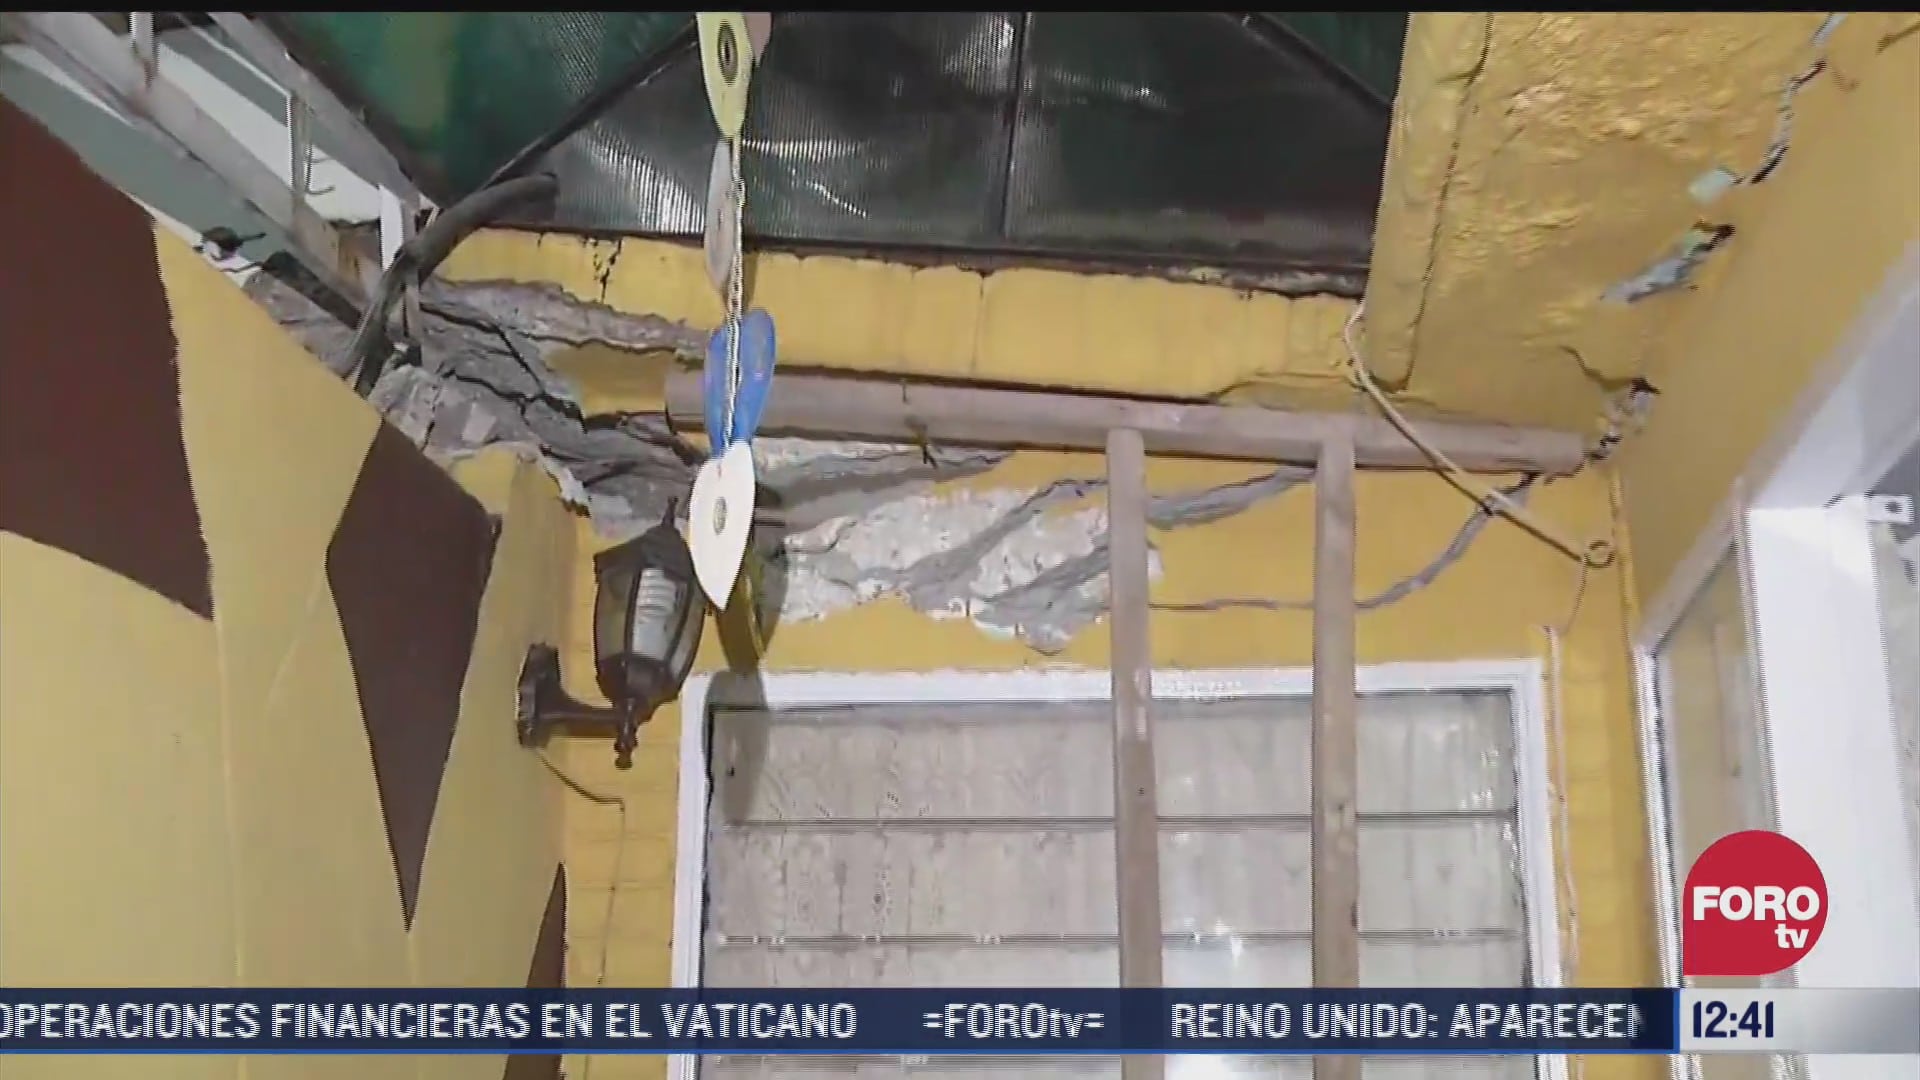 microsismo causa danos estructurales en casas del estado de mexico